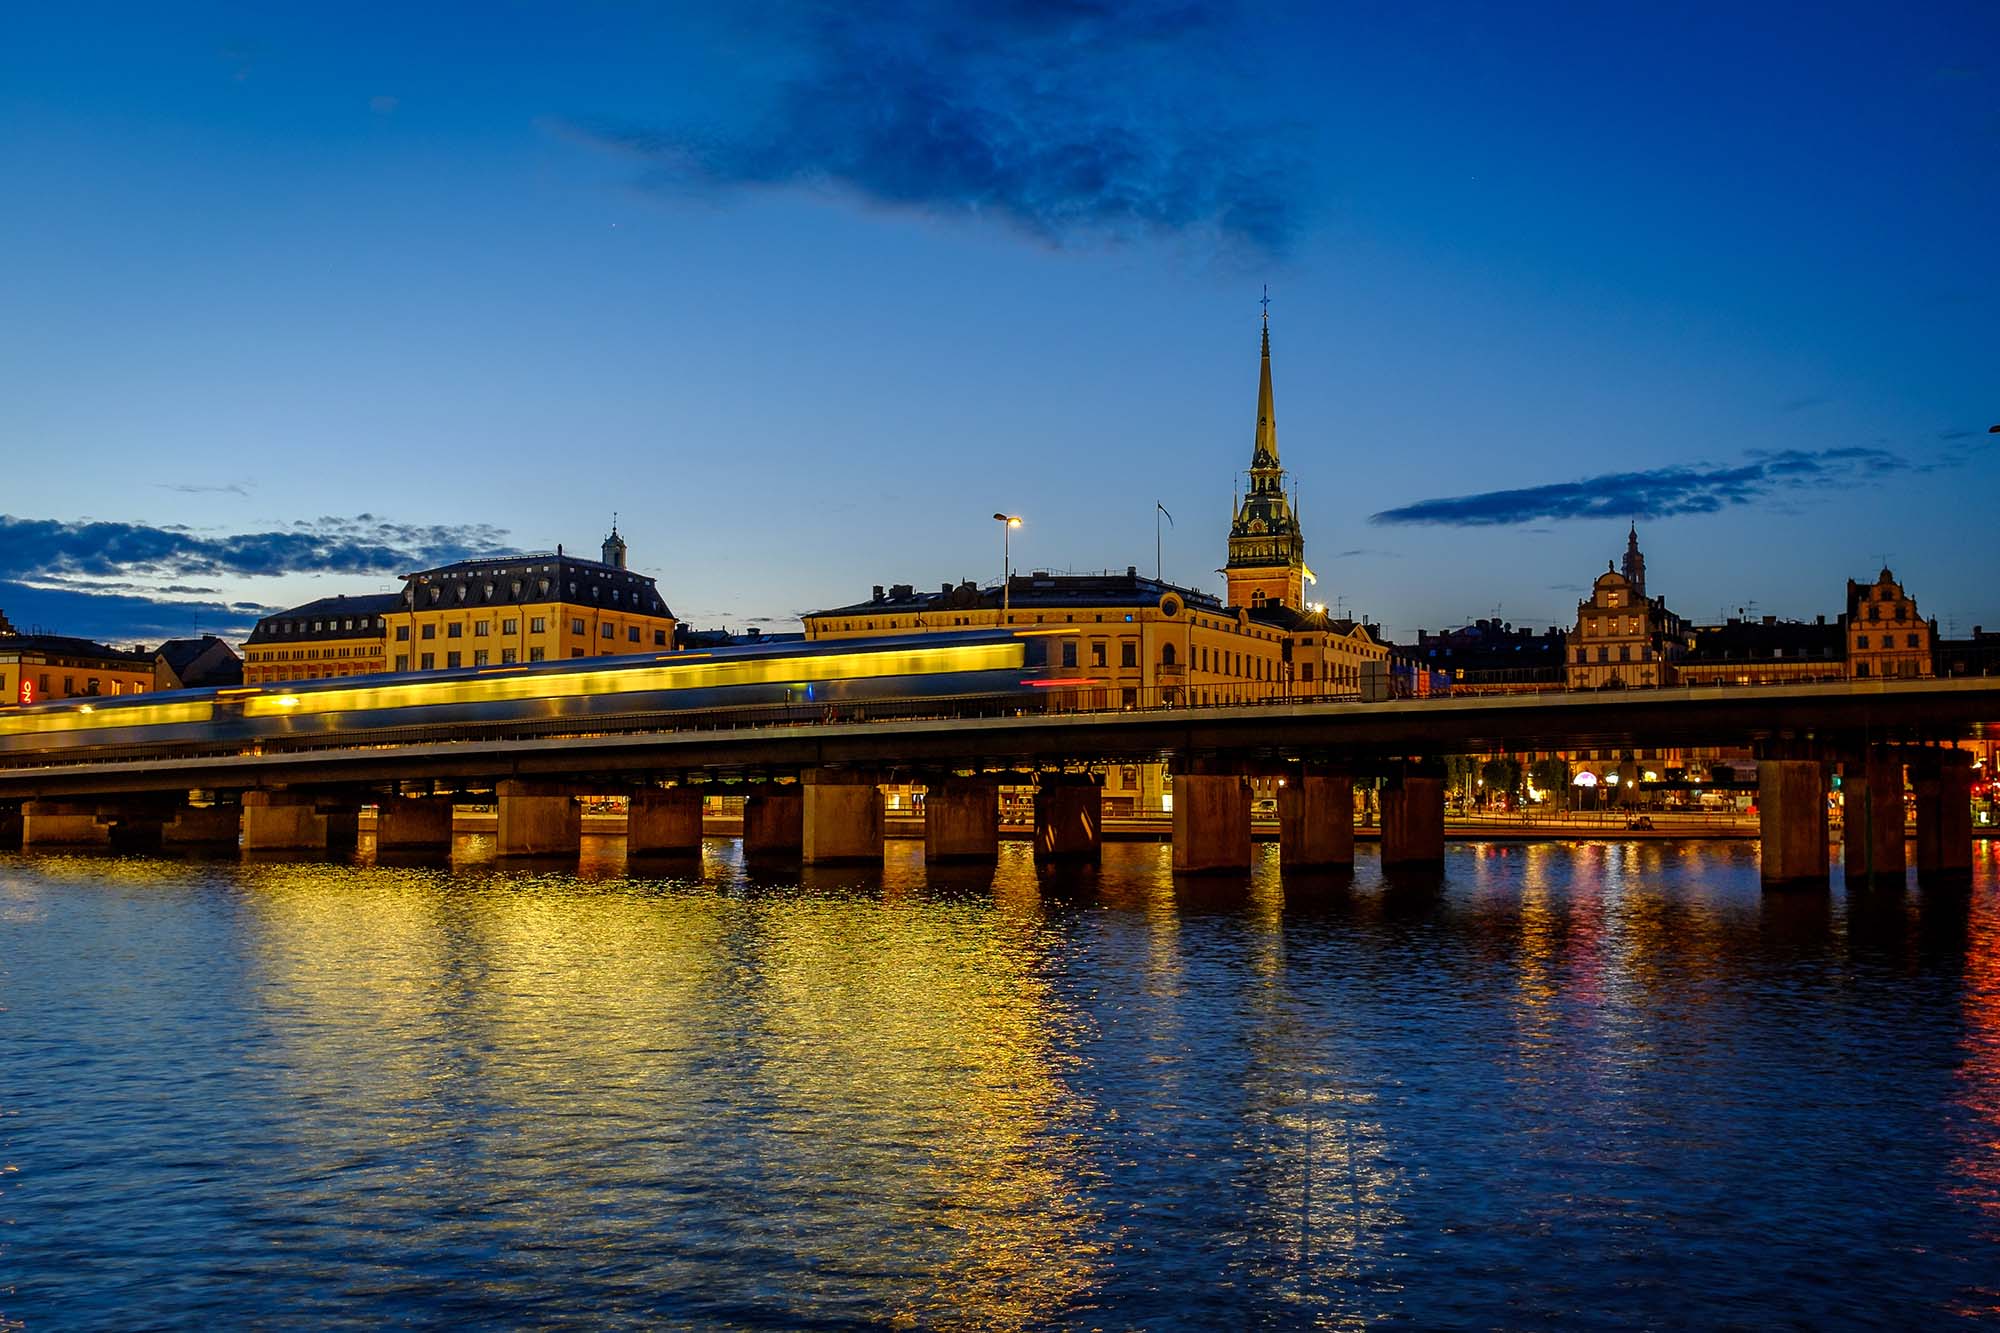 Tåg som kör över en bro i Stockholm